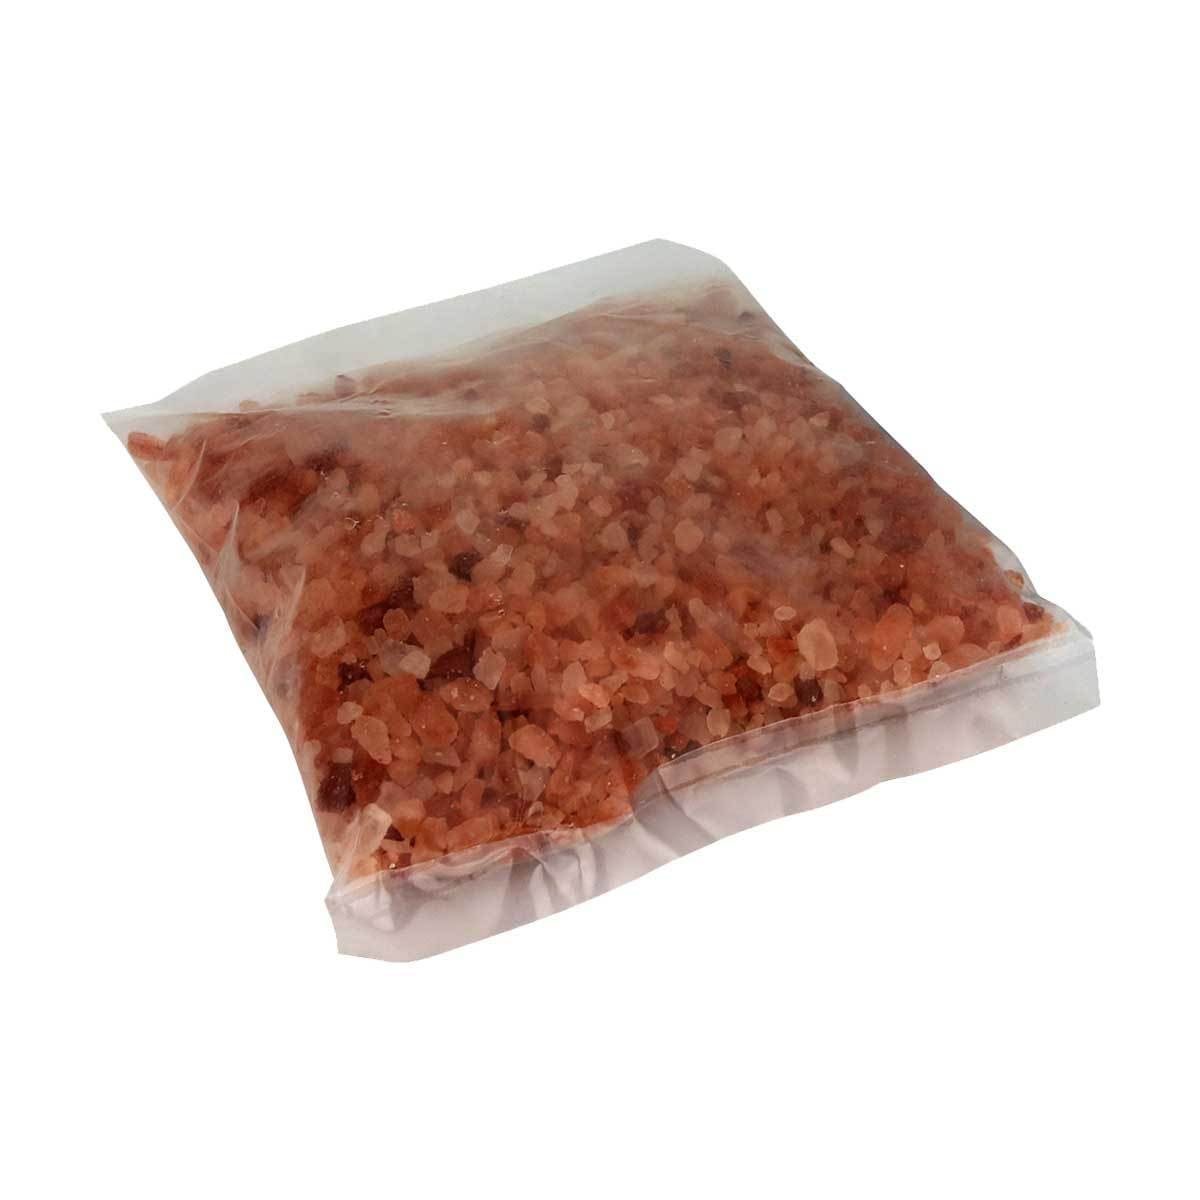 Himalayan Pink Salt Inhaler salt packet